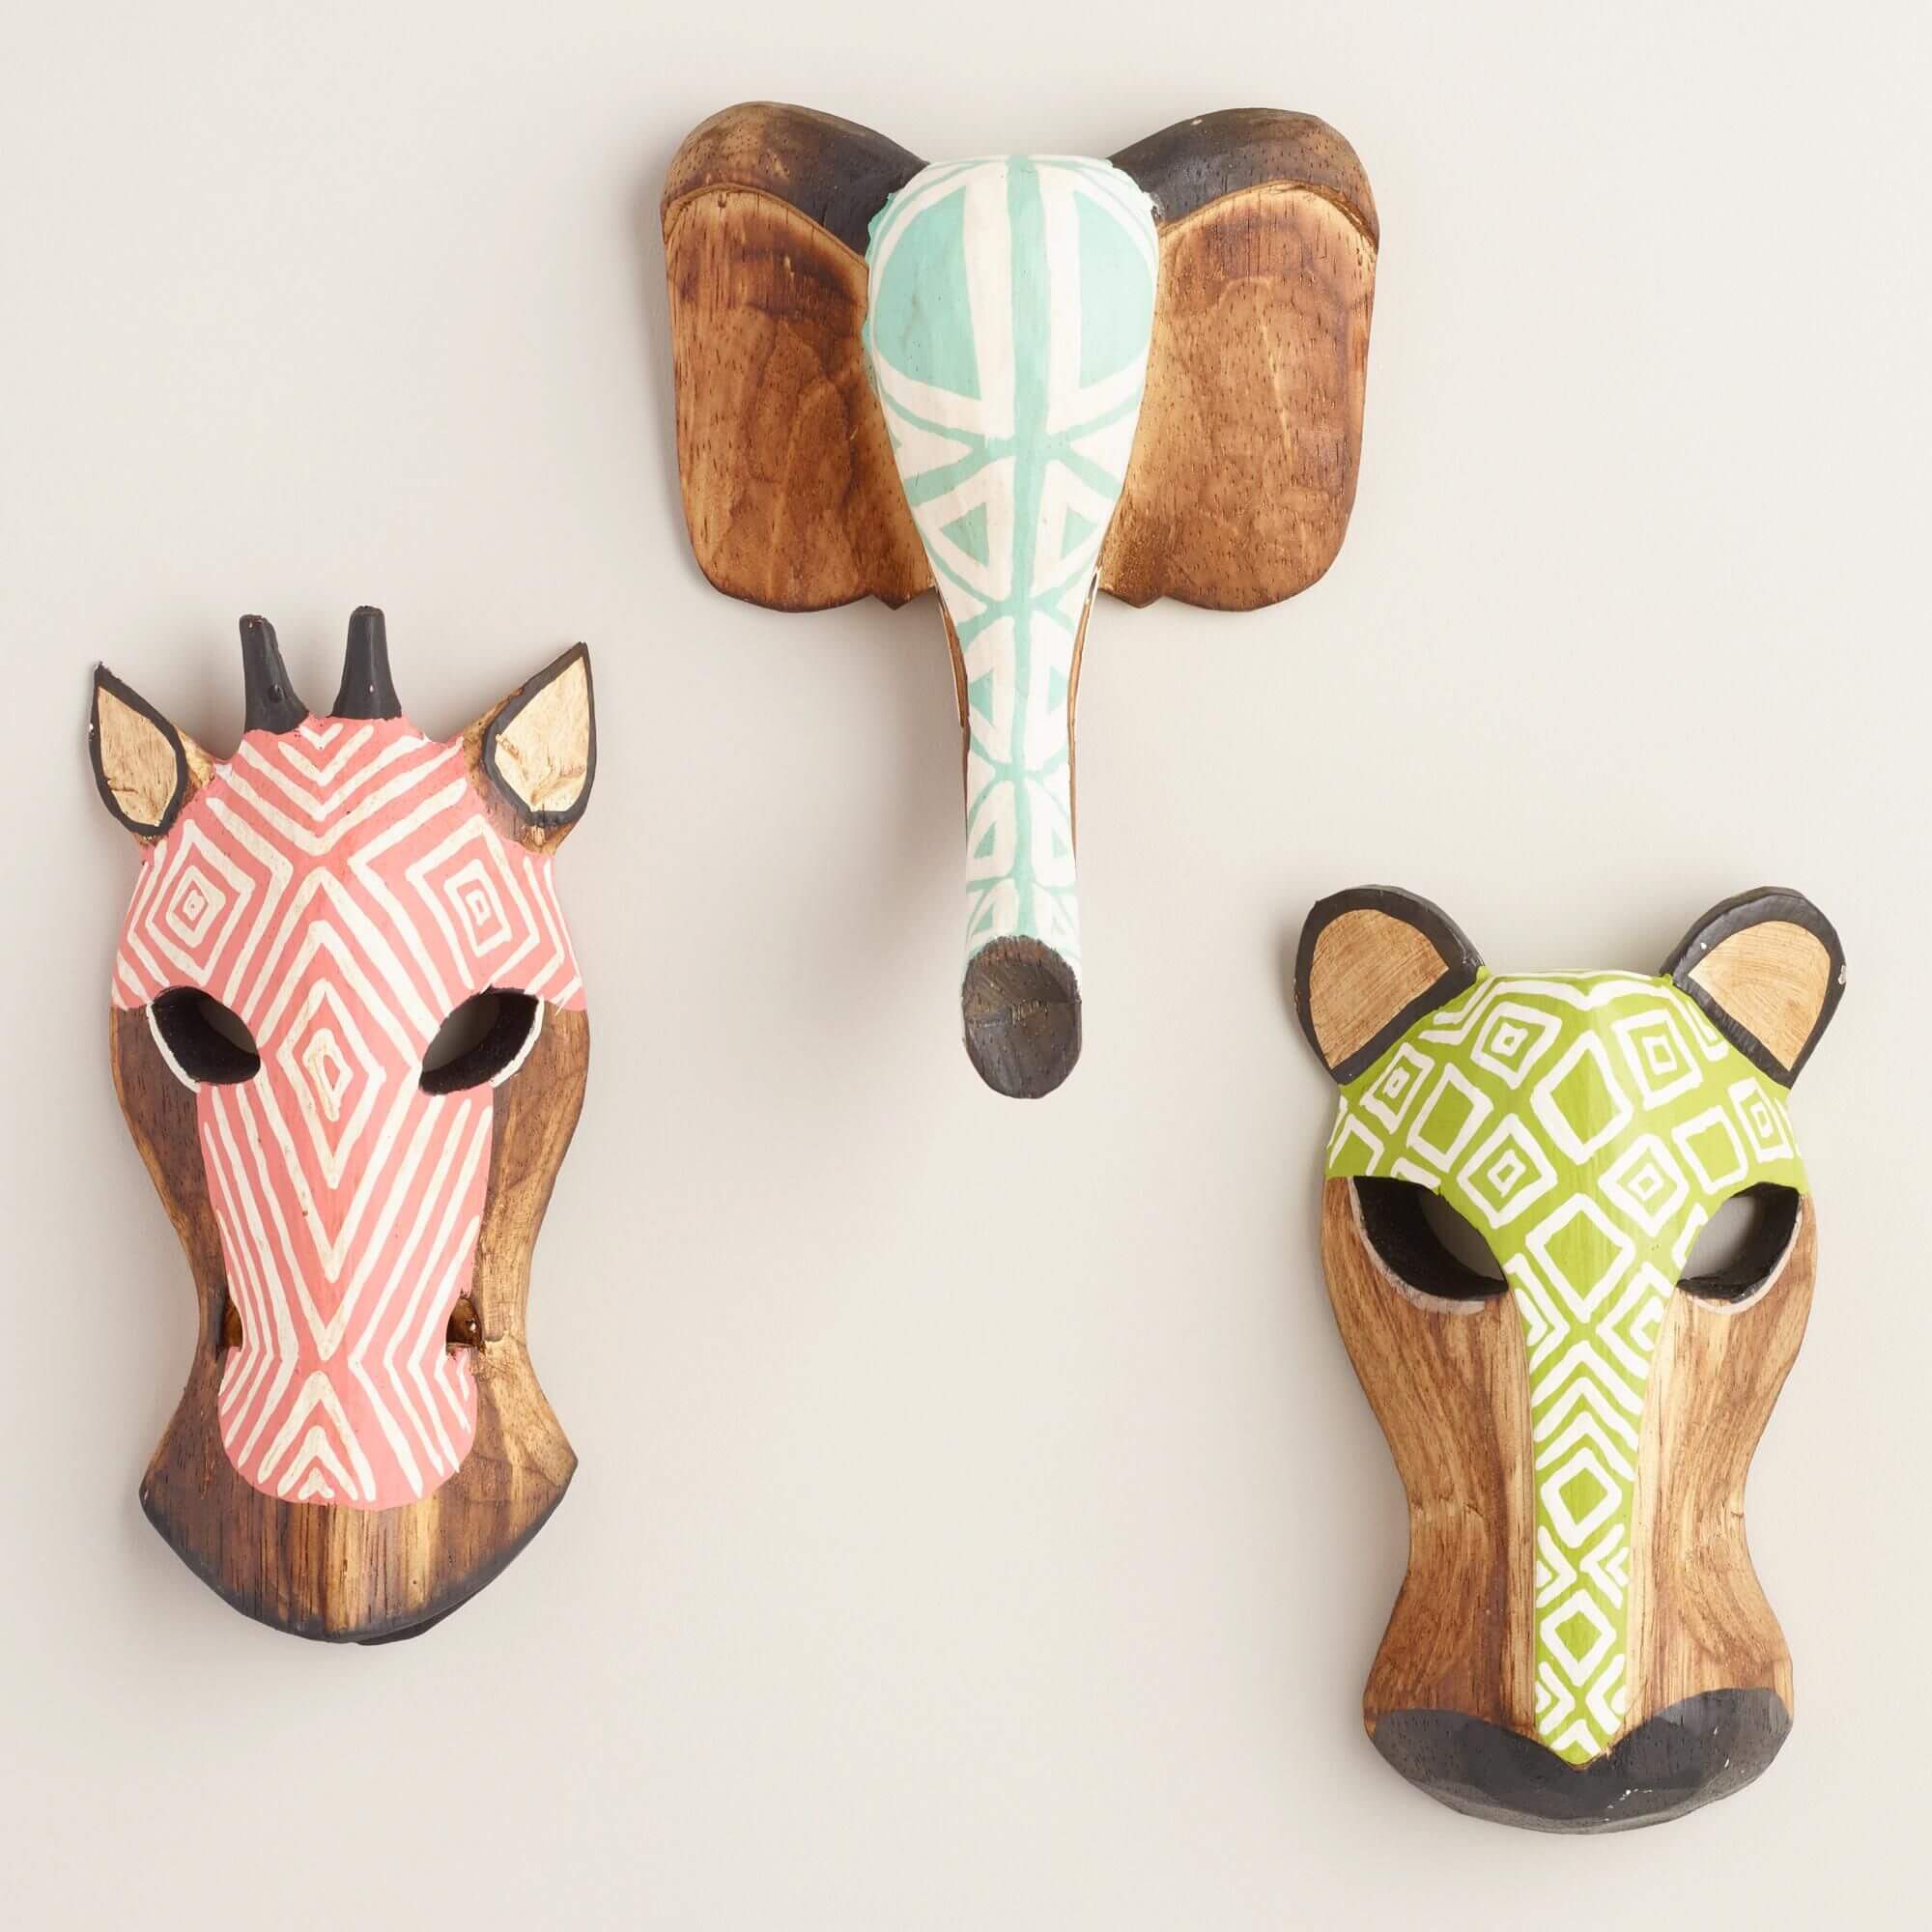 Carved wooden animal masks